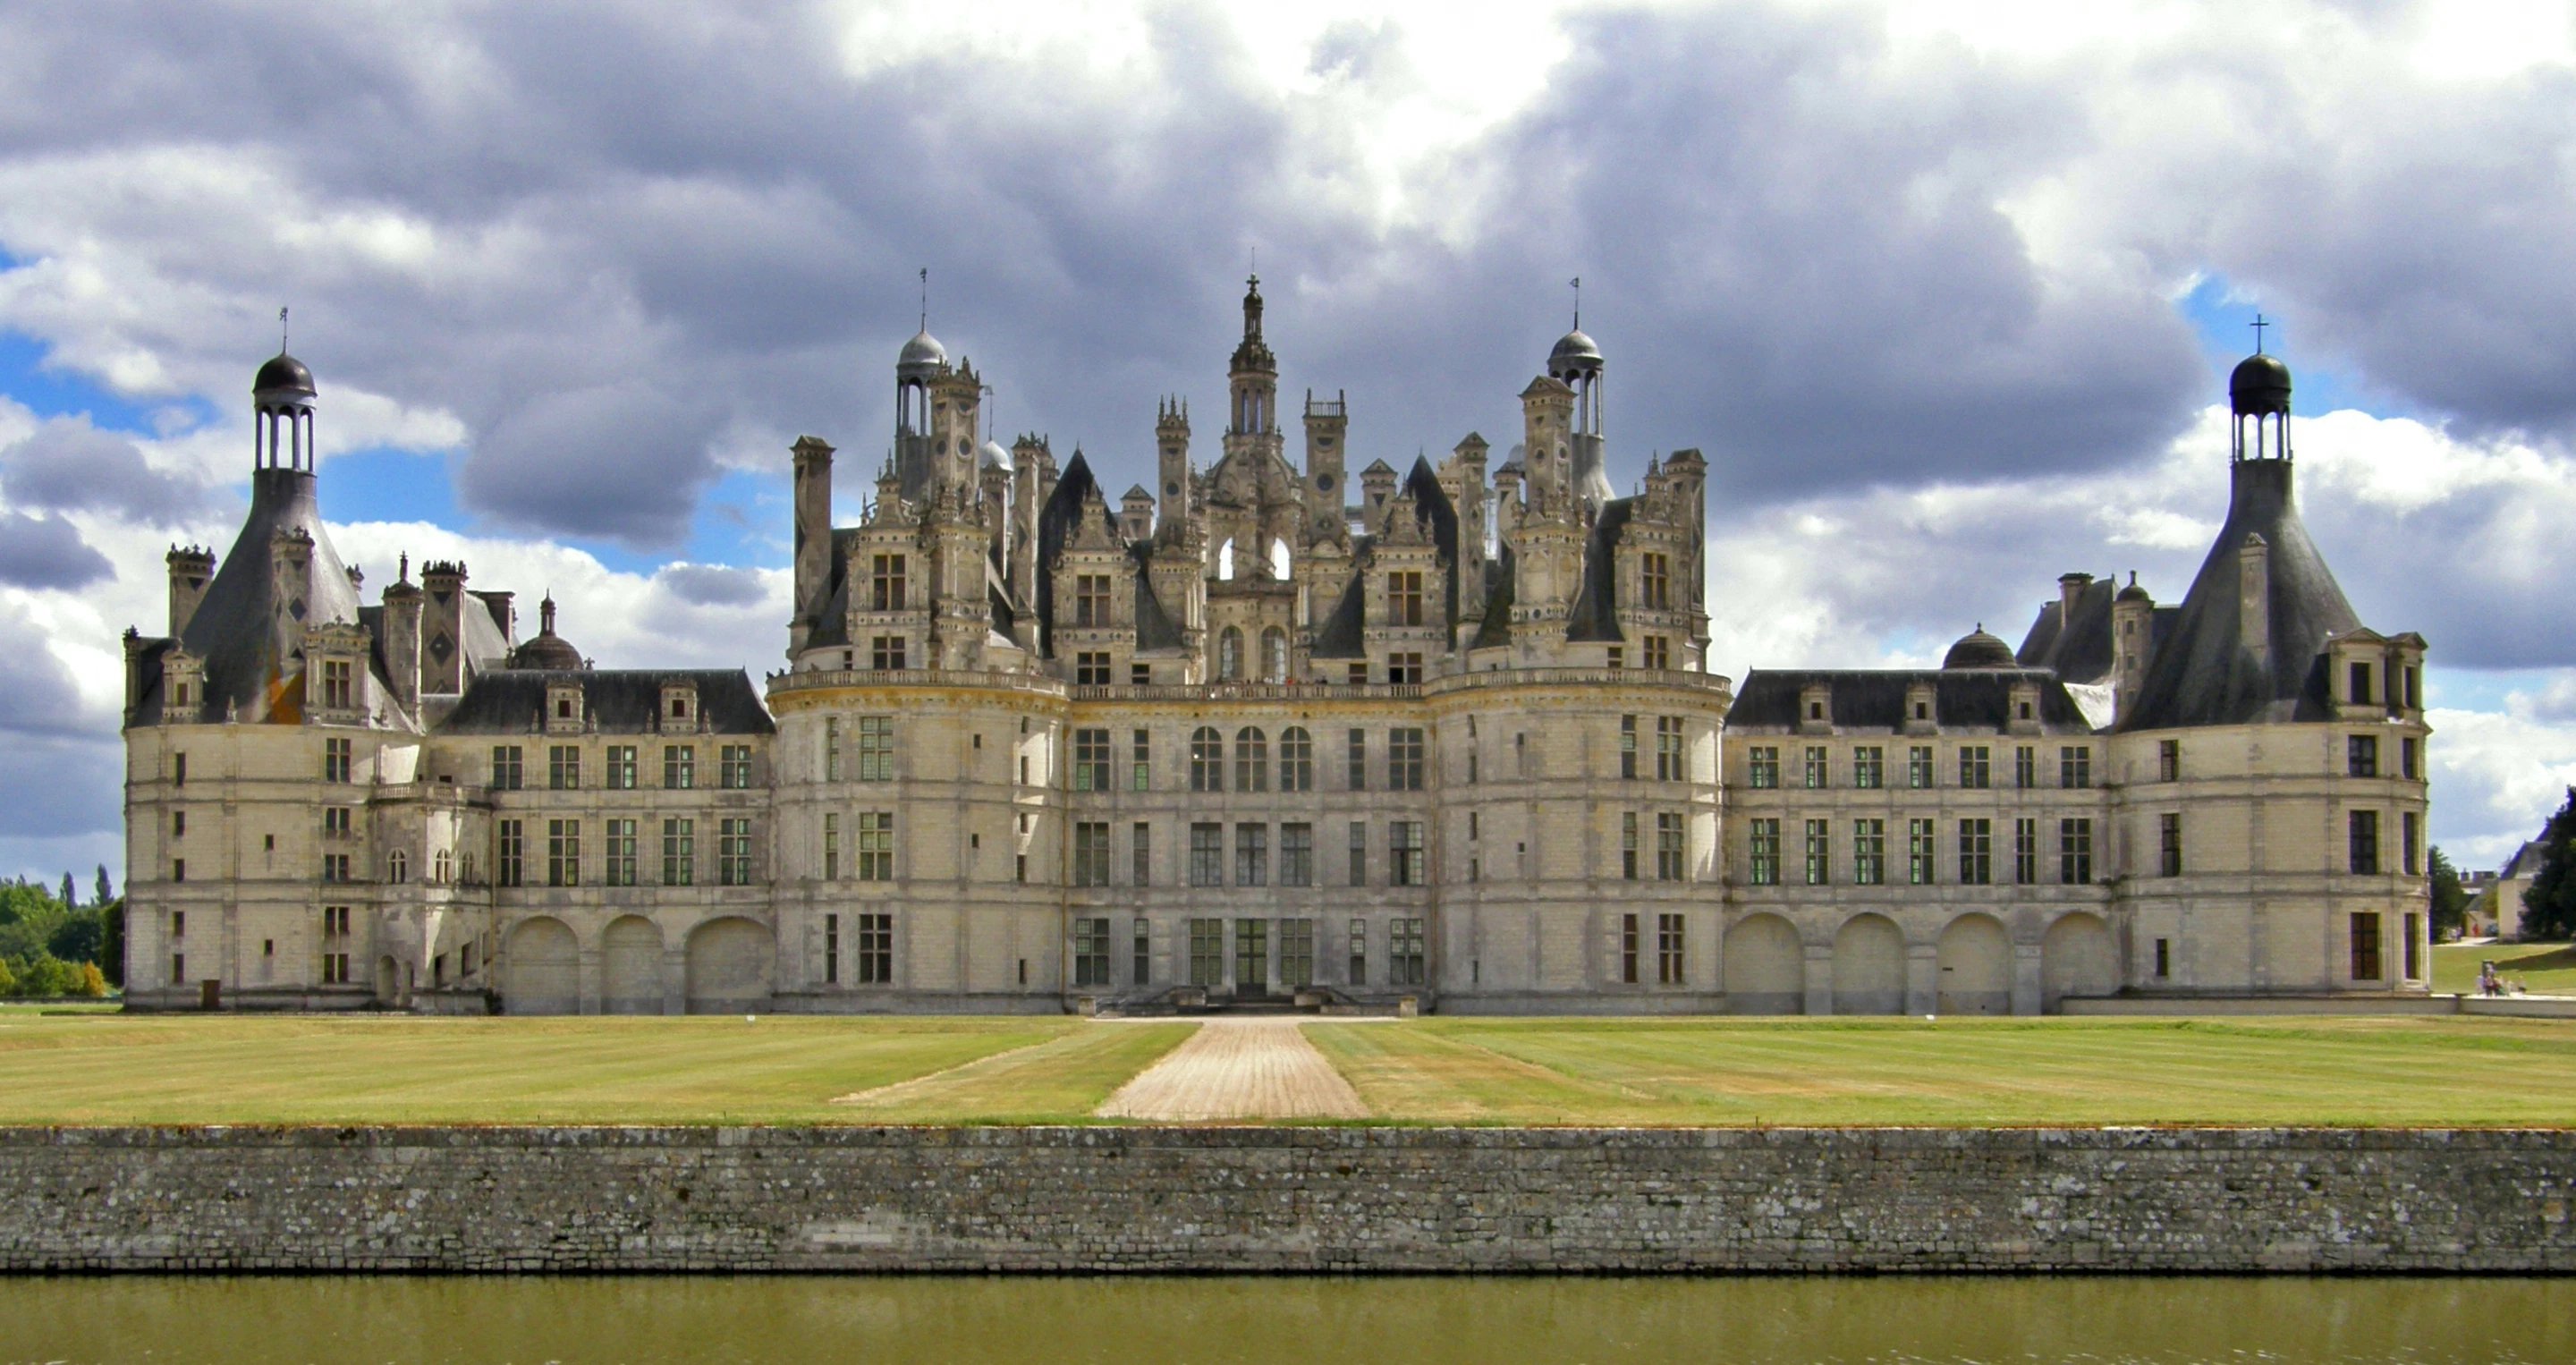 Château de Beauvois **** | Hotel Chateau Loire Valley | OFFICIAL WEBSITE